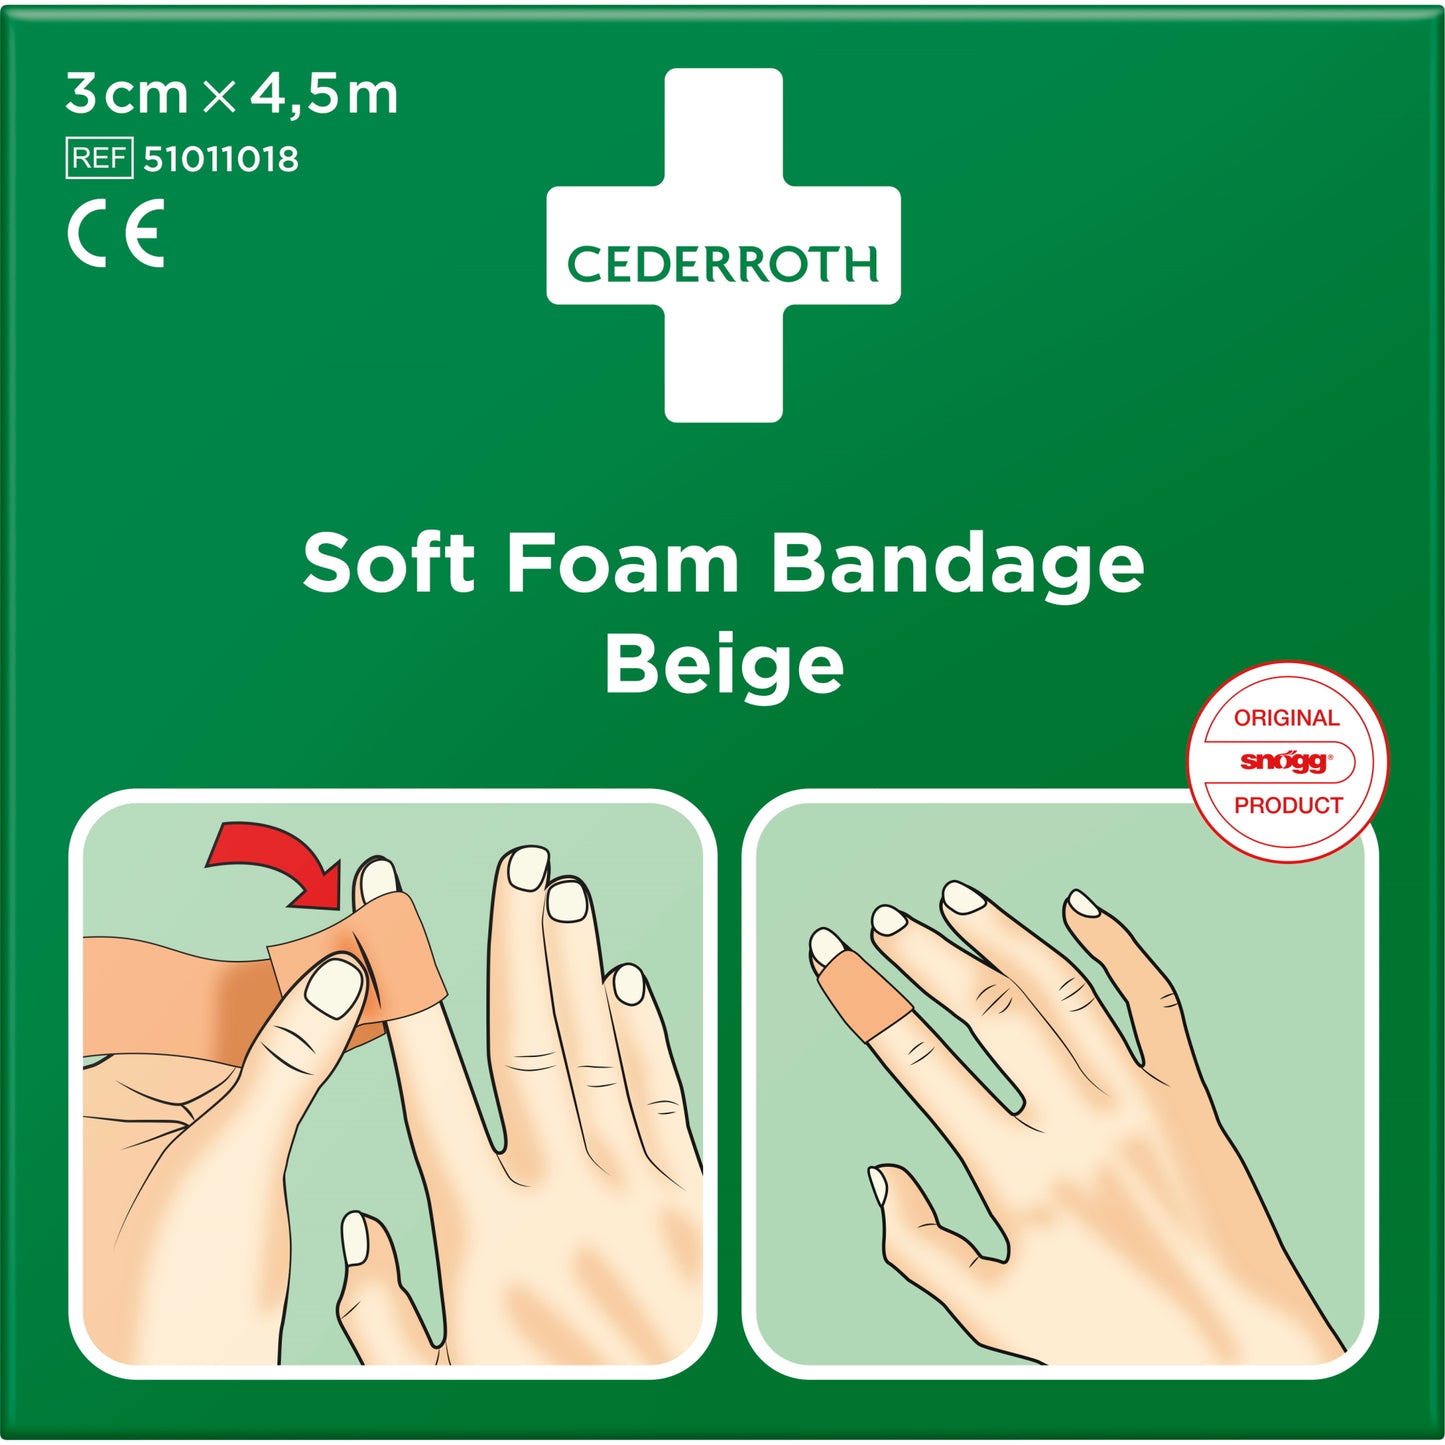 Soft Foam Bandage Beige 3 cm x 4.5 m